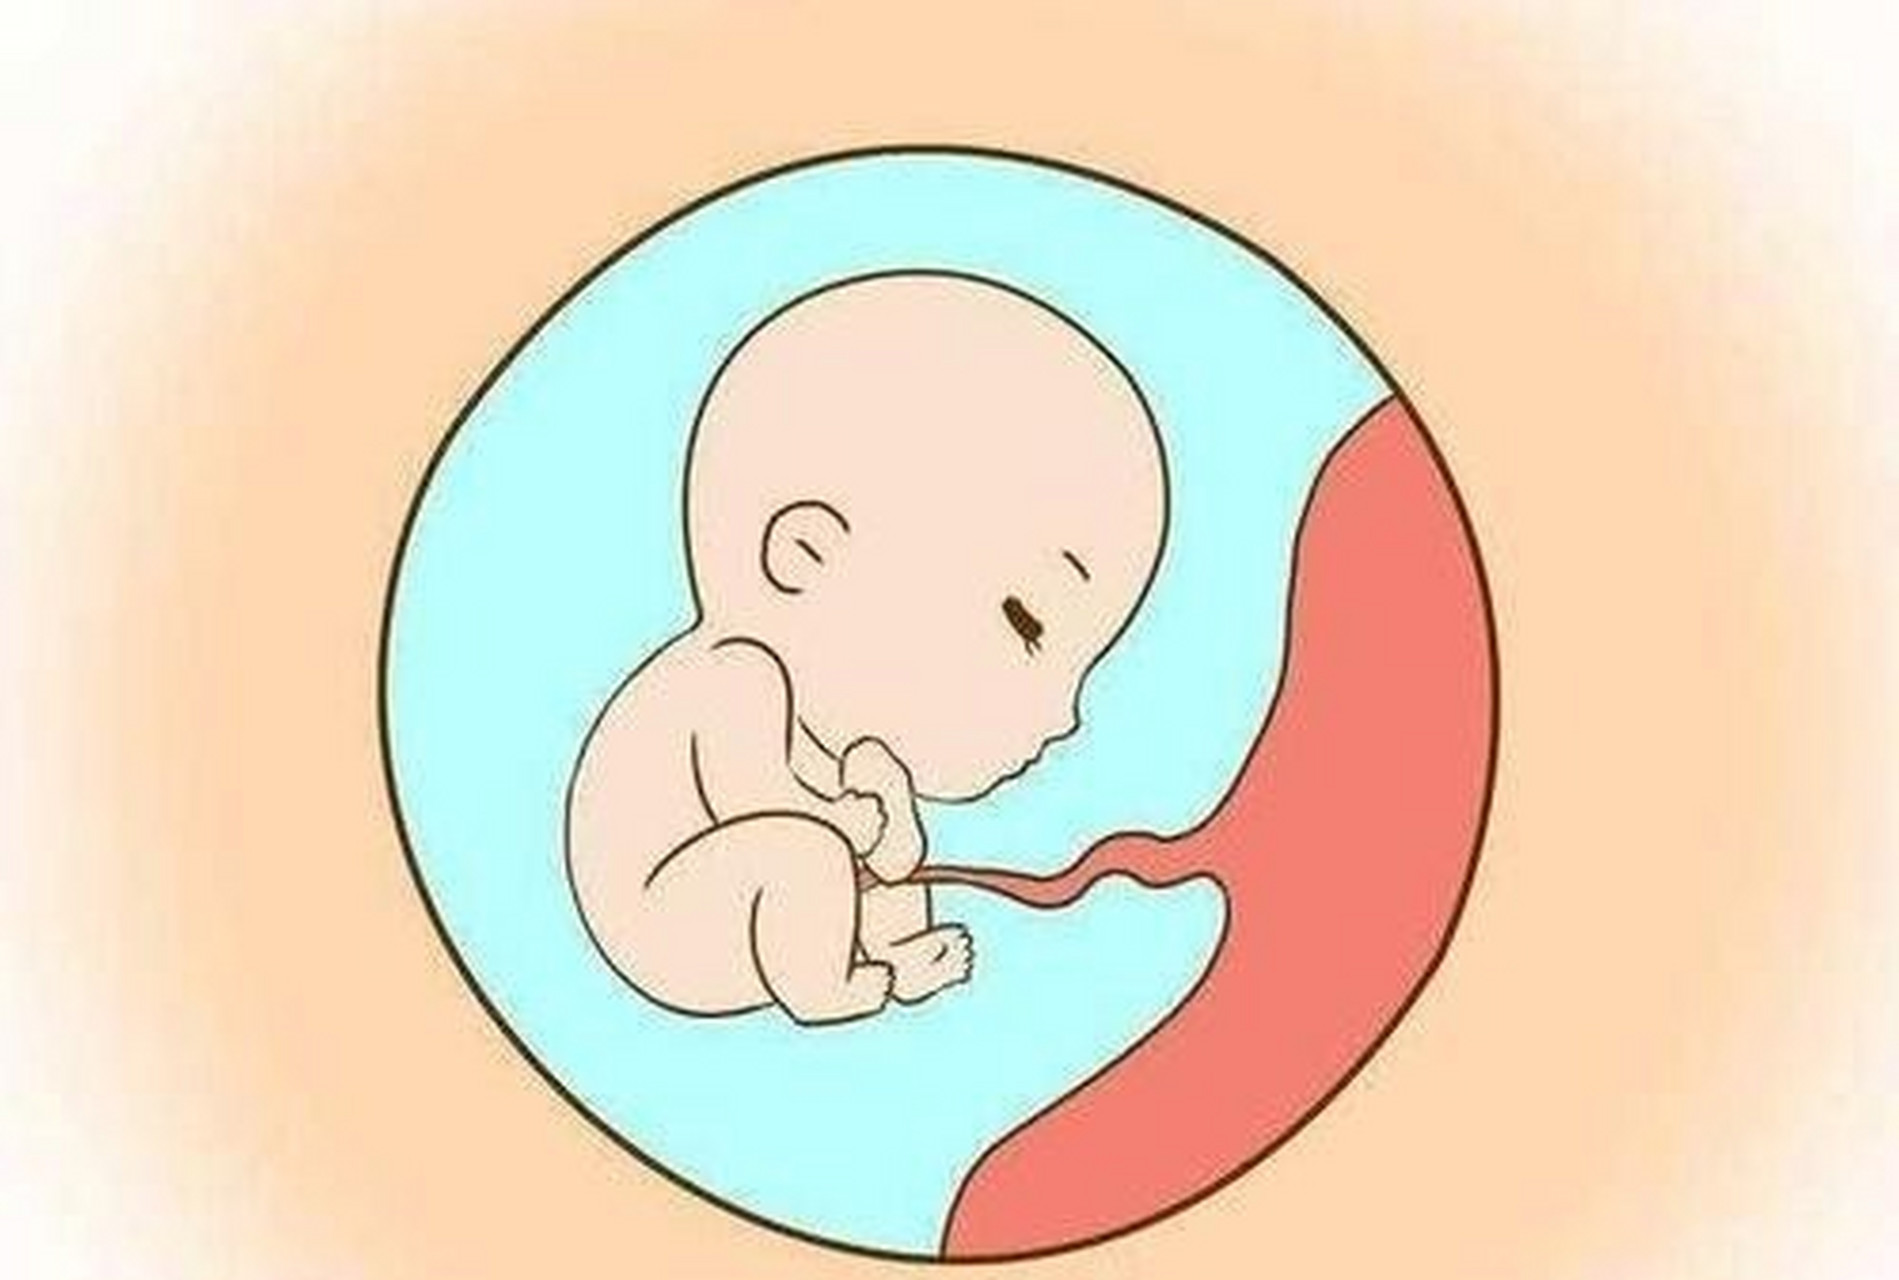 怀孕已经三个月了,胎儿有多大呢? 怀孕三个月内胎儿的大小!